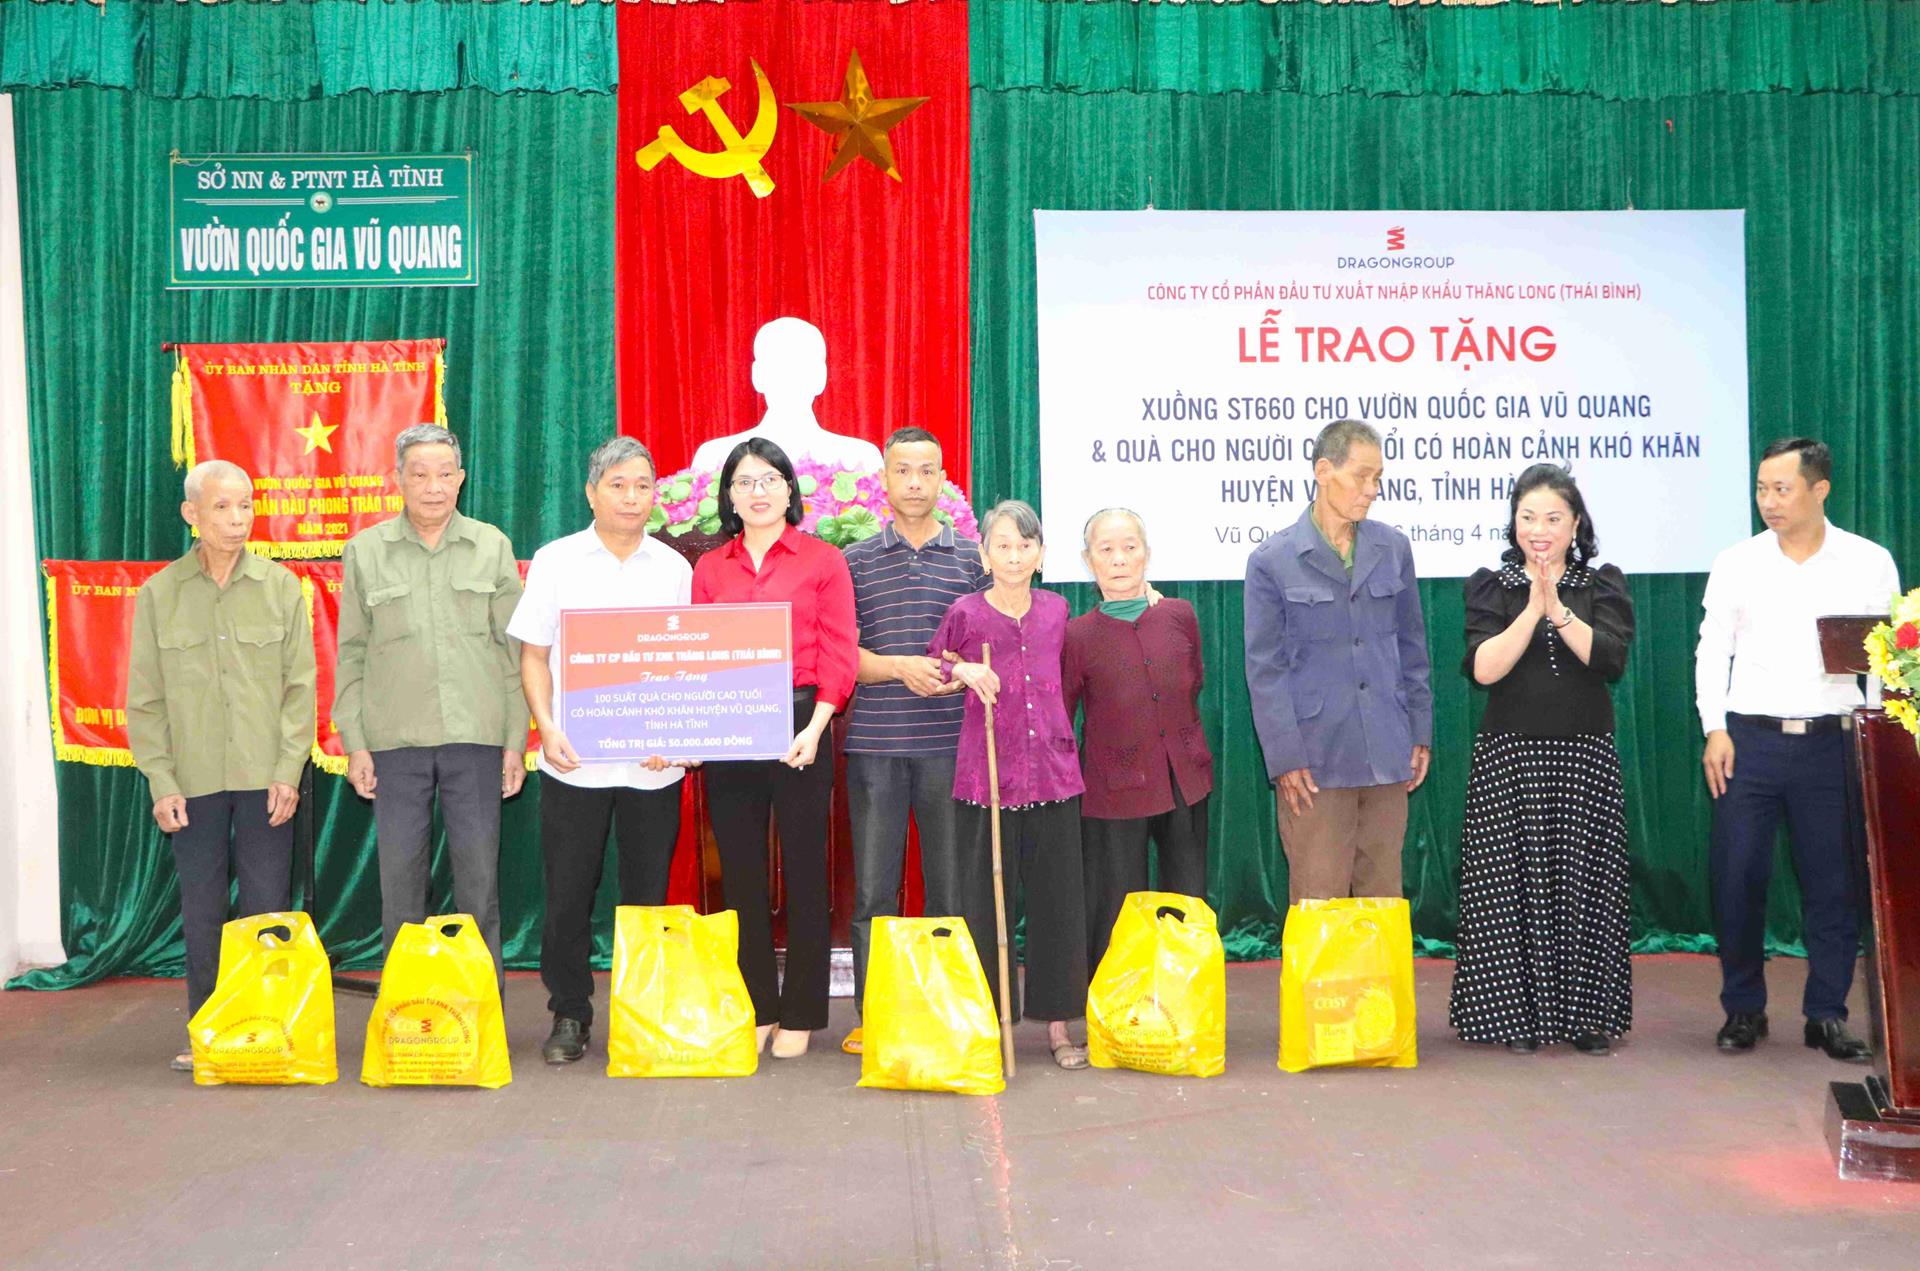 Bà Vũ Thị Thà - Chủ tịch Hội đồng quản trị Công ty Cổ phần Đầu tư Xuất nhập khẩu Thăng Long và các thành viên cùng đi trong đoàn trao tặng qua cho người cao tuổi huyện Vũ Quang.